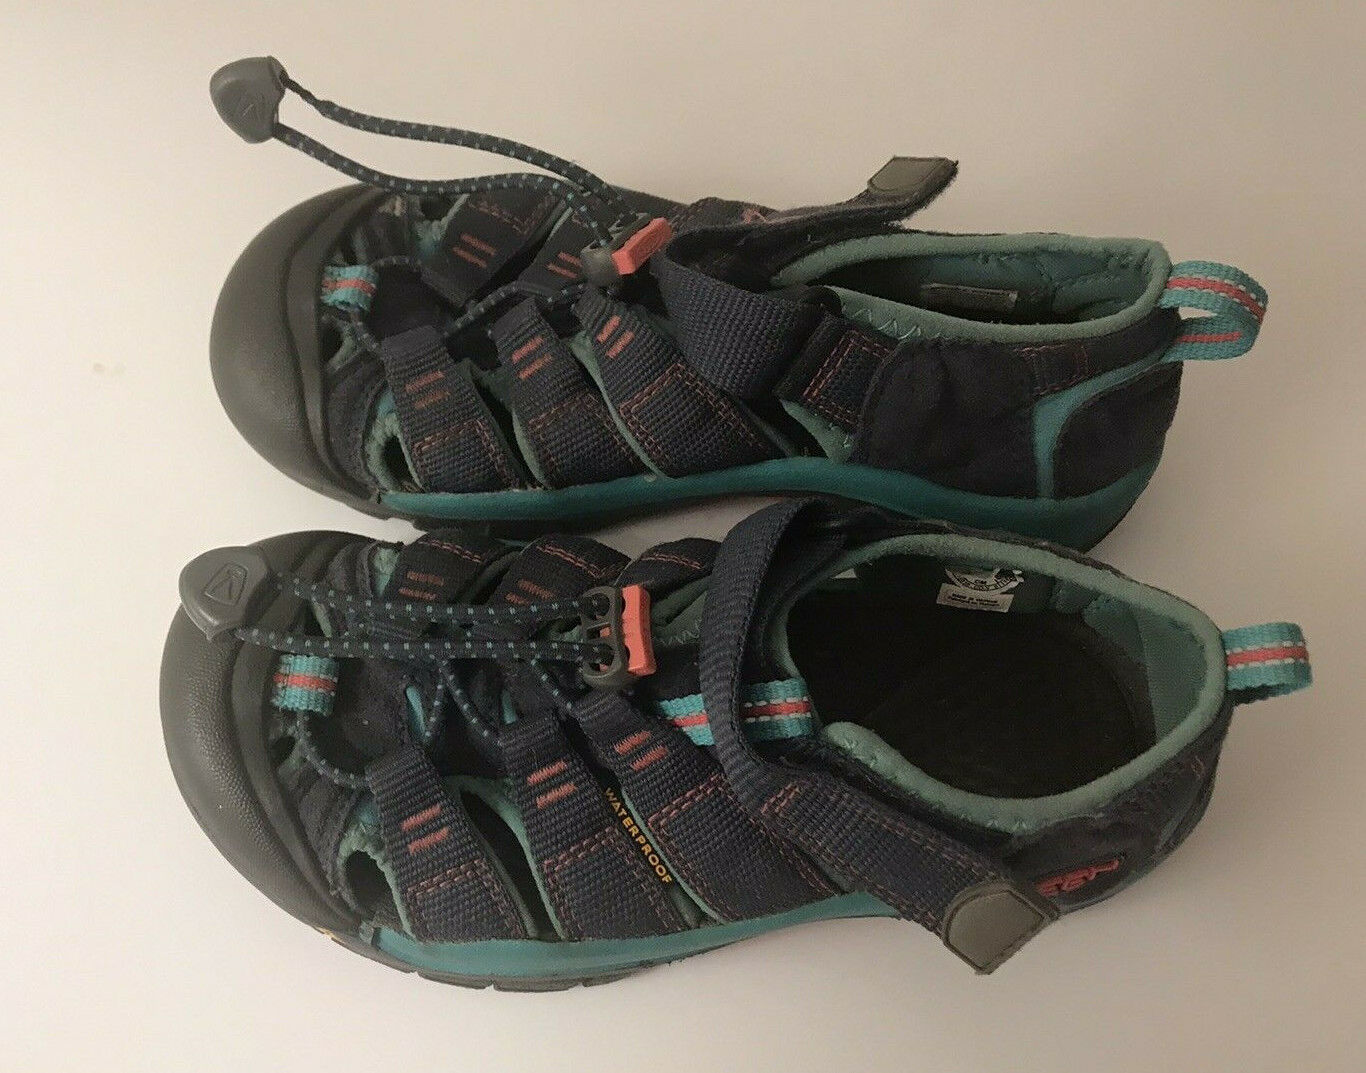 KEEN Turquoise Gray Waterproof Sandals Girls Sz 1 Pull String Hook Loop Closure  - £10.10 GBP